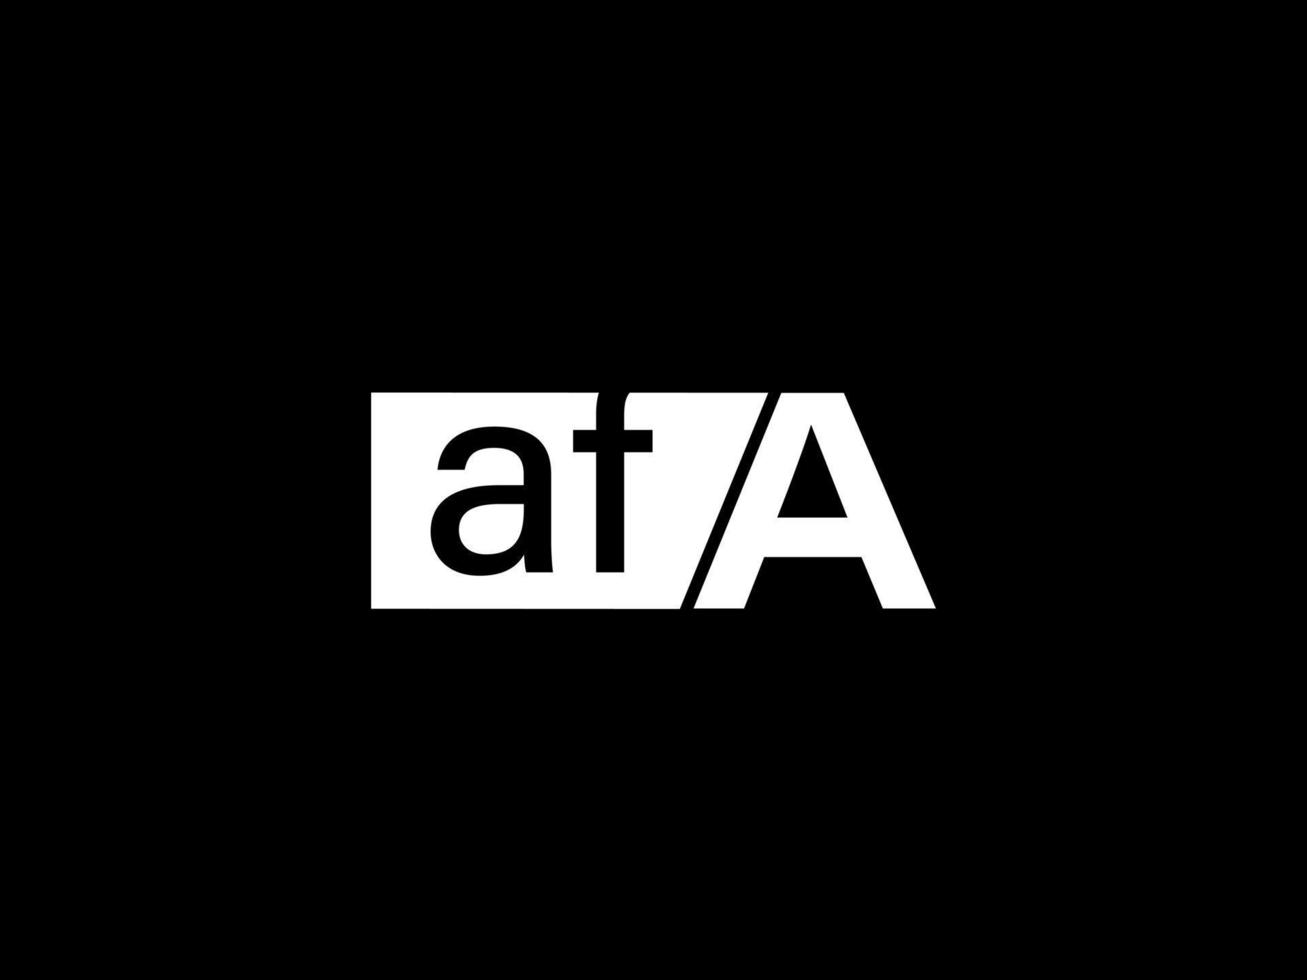 afa-Logo und Grafikdesign Vektorgrafiken, Symbole isoliert auf schwarzem Hintergrund vektor